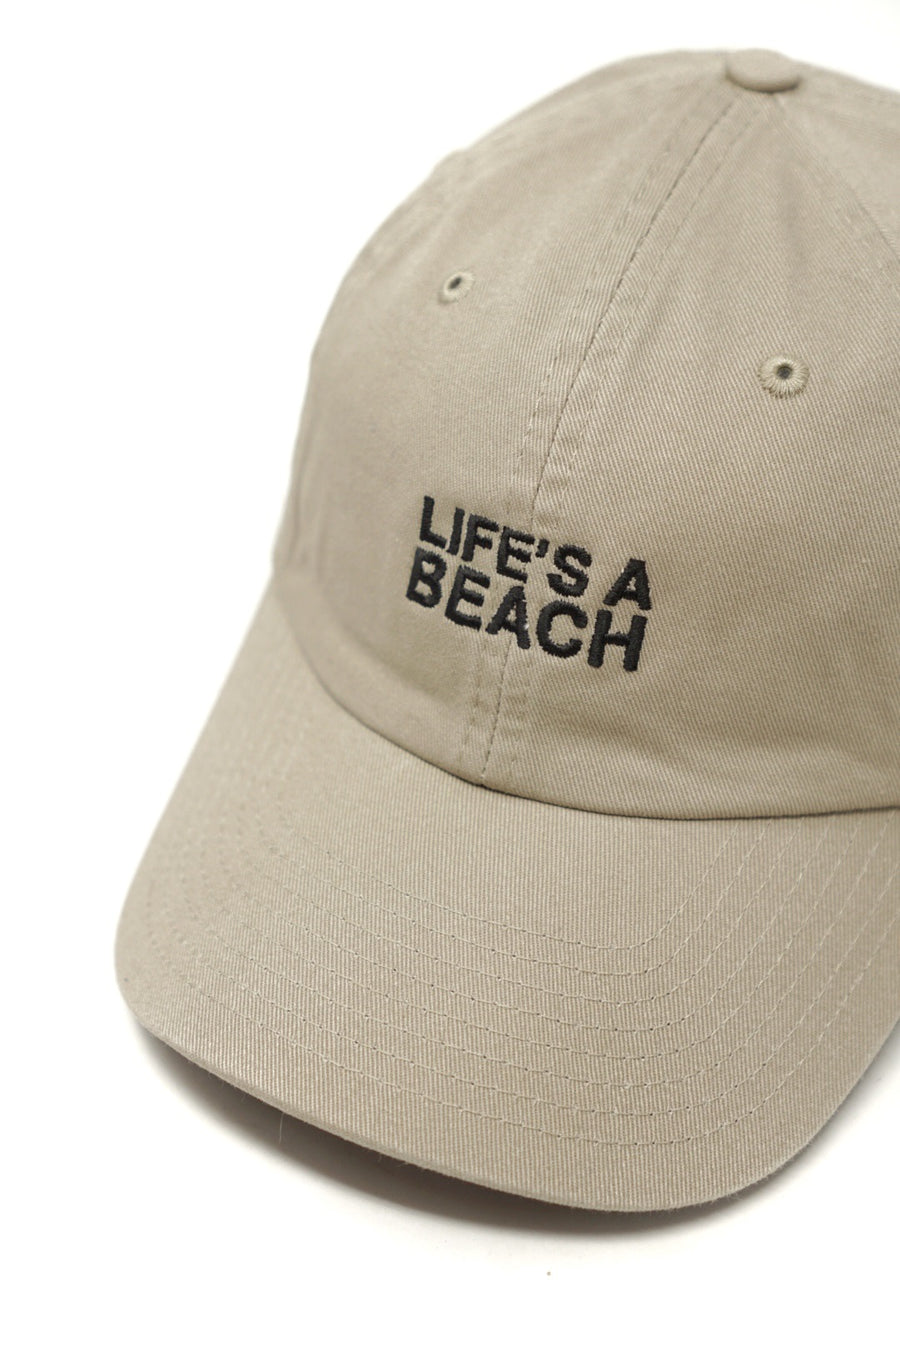 LIFES A BEACH